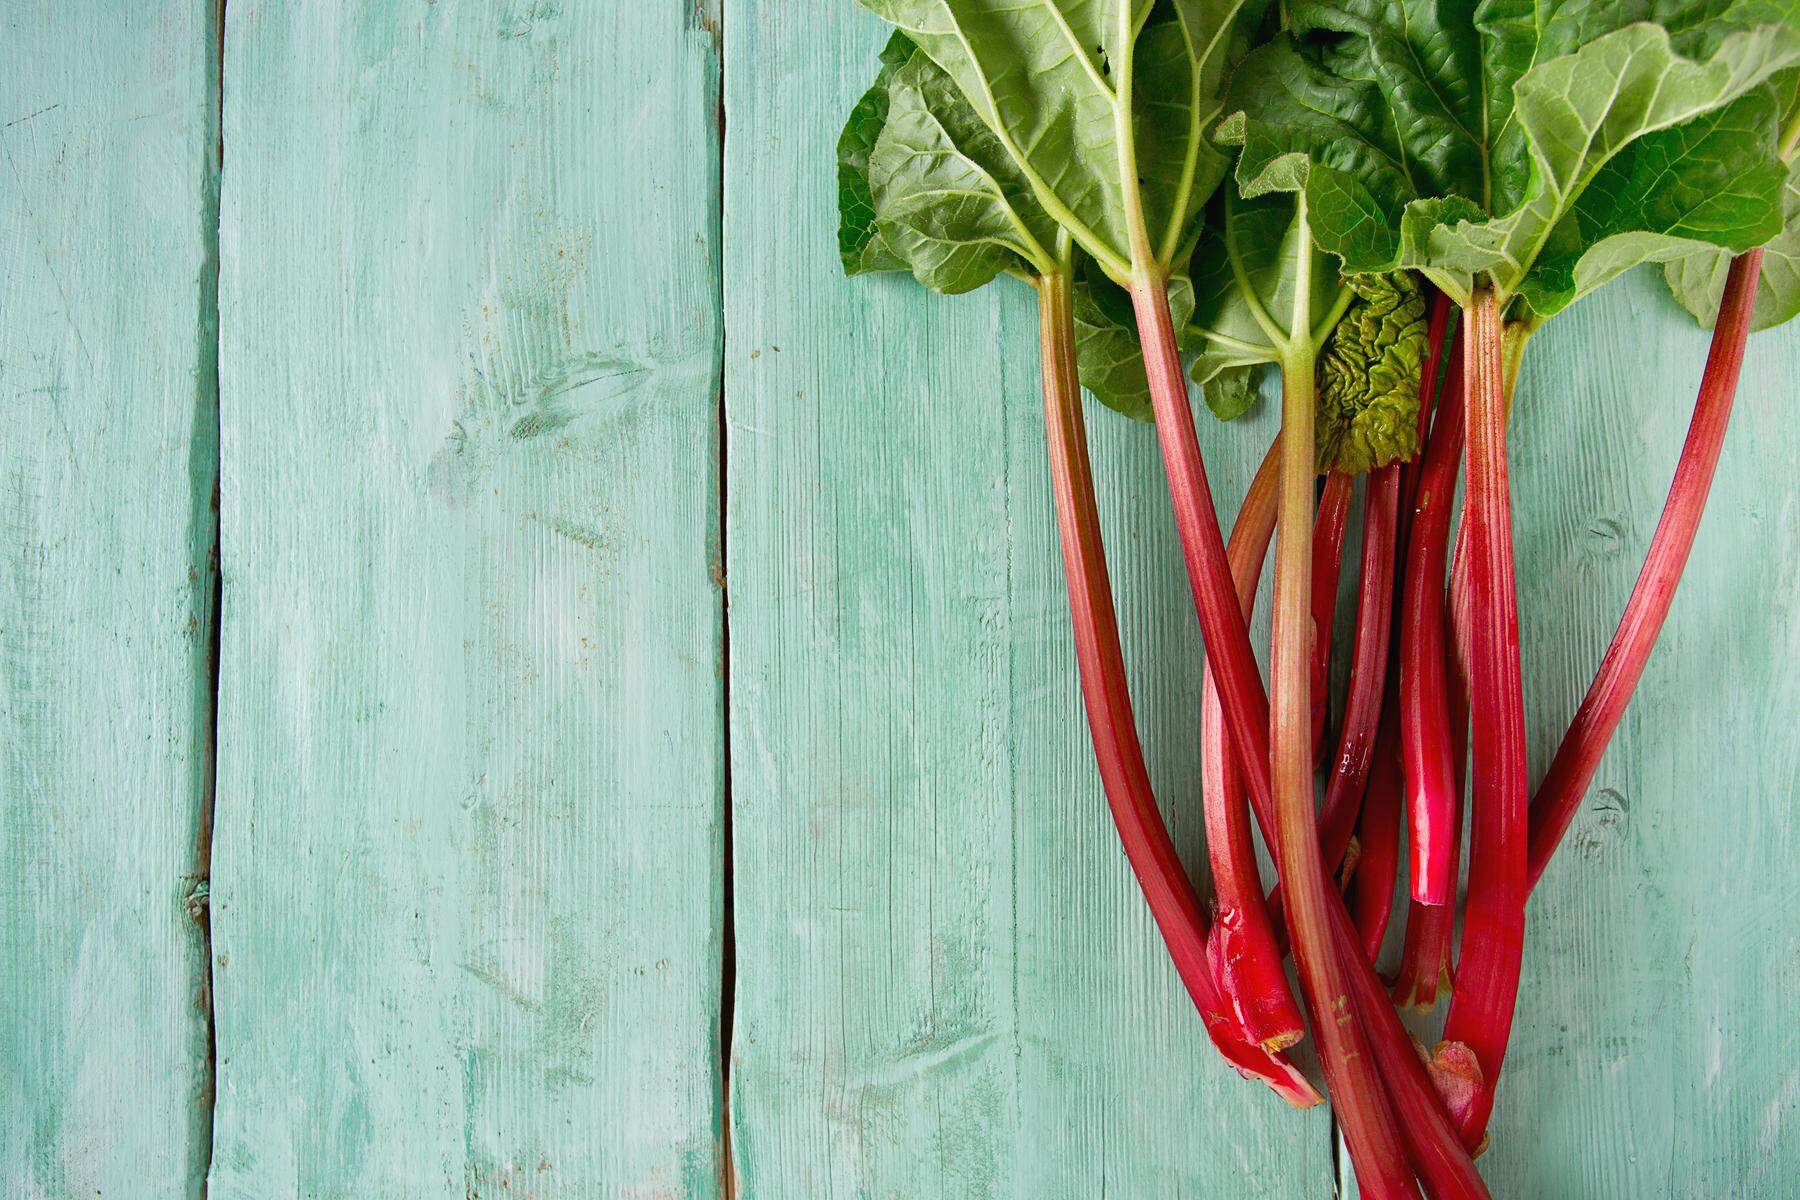 Oxalsäure und Co. : Sagen Sie nicht Gemüse zu ihm: 9 Dinge, die man über den Rhabarbar wissen sollte